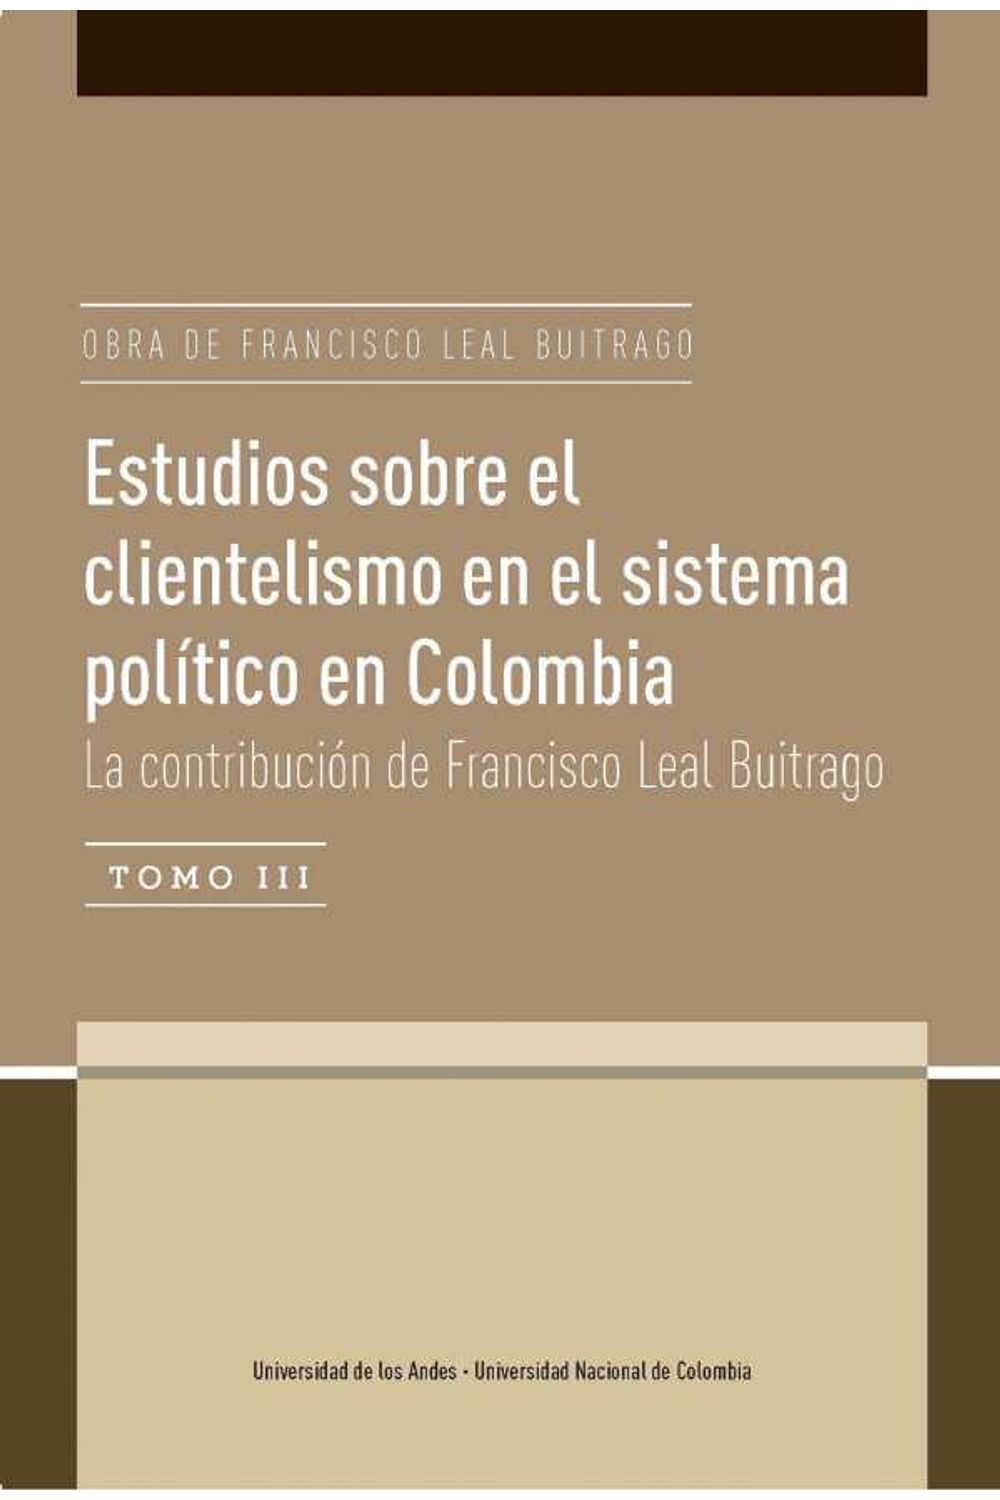 bw-estudios-sobre-el-clientelismo-en-el-sistema-poliacutetico-en-colombia-la-contribucioacuten-de-francisco-leal-buitrago-u-de-los-andes-9789587746648